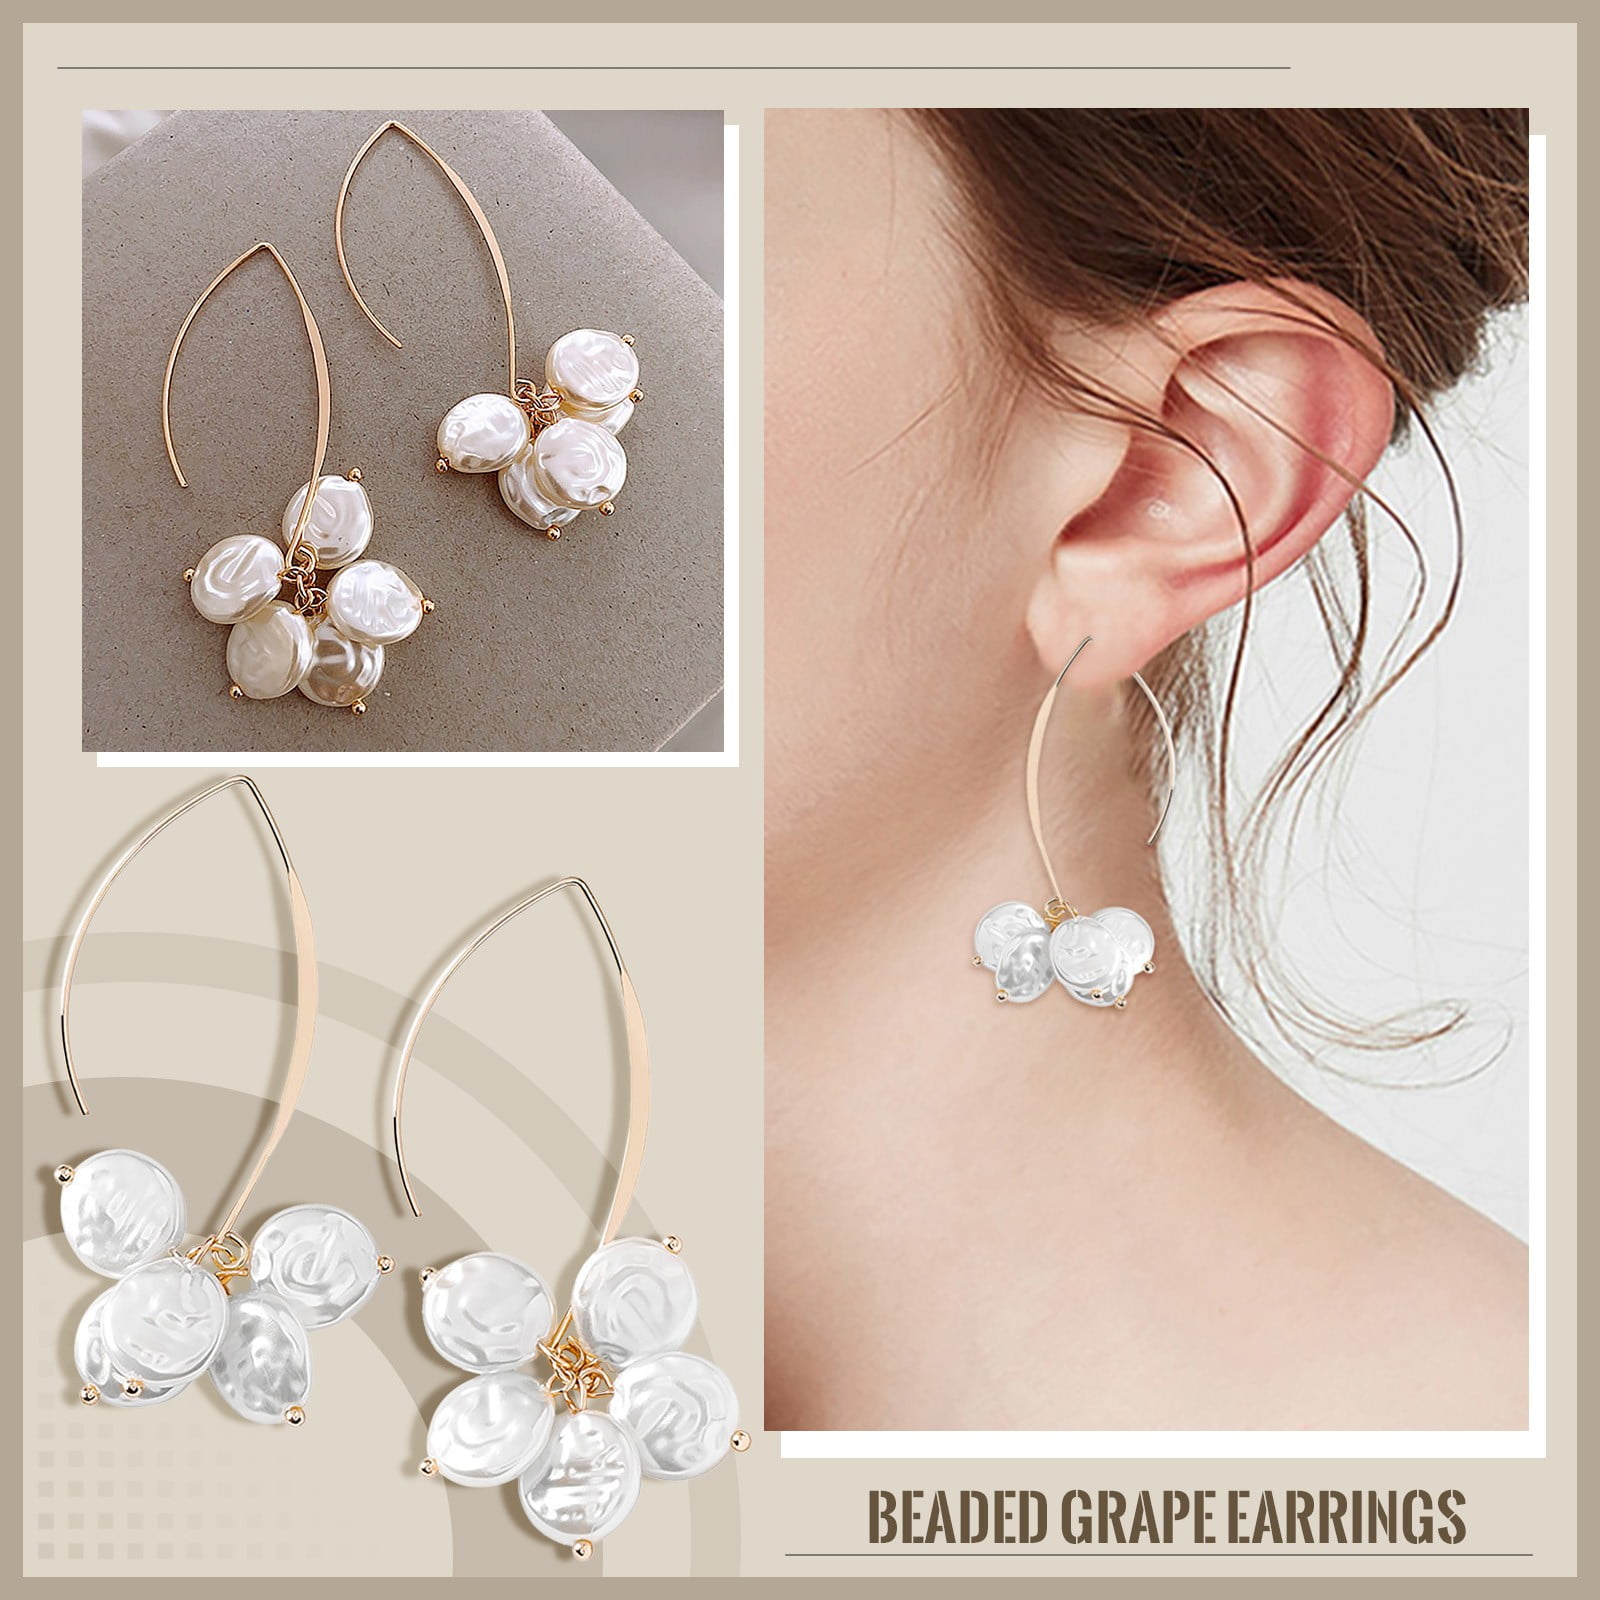 Jewelry Earrings Jewelry Ear Piece U Temperament Pearl Ear Earrings Shaped Design Hook Small Earrings Accessories for Women f0c4917c ed96 4b19 ba1b c9aa3802cd7c.881e7456b12855ae6770d6006985d82e